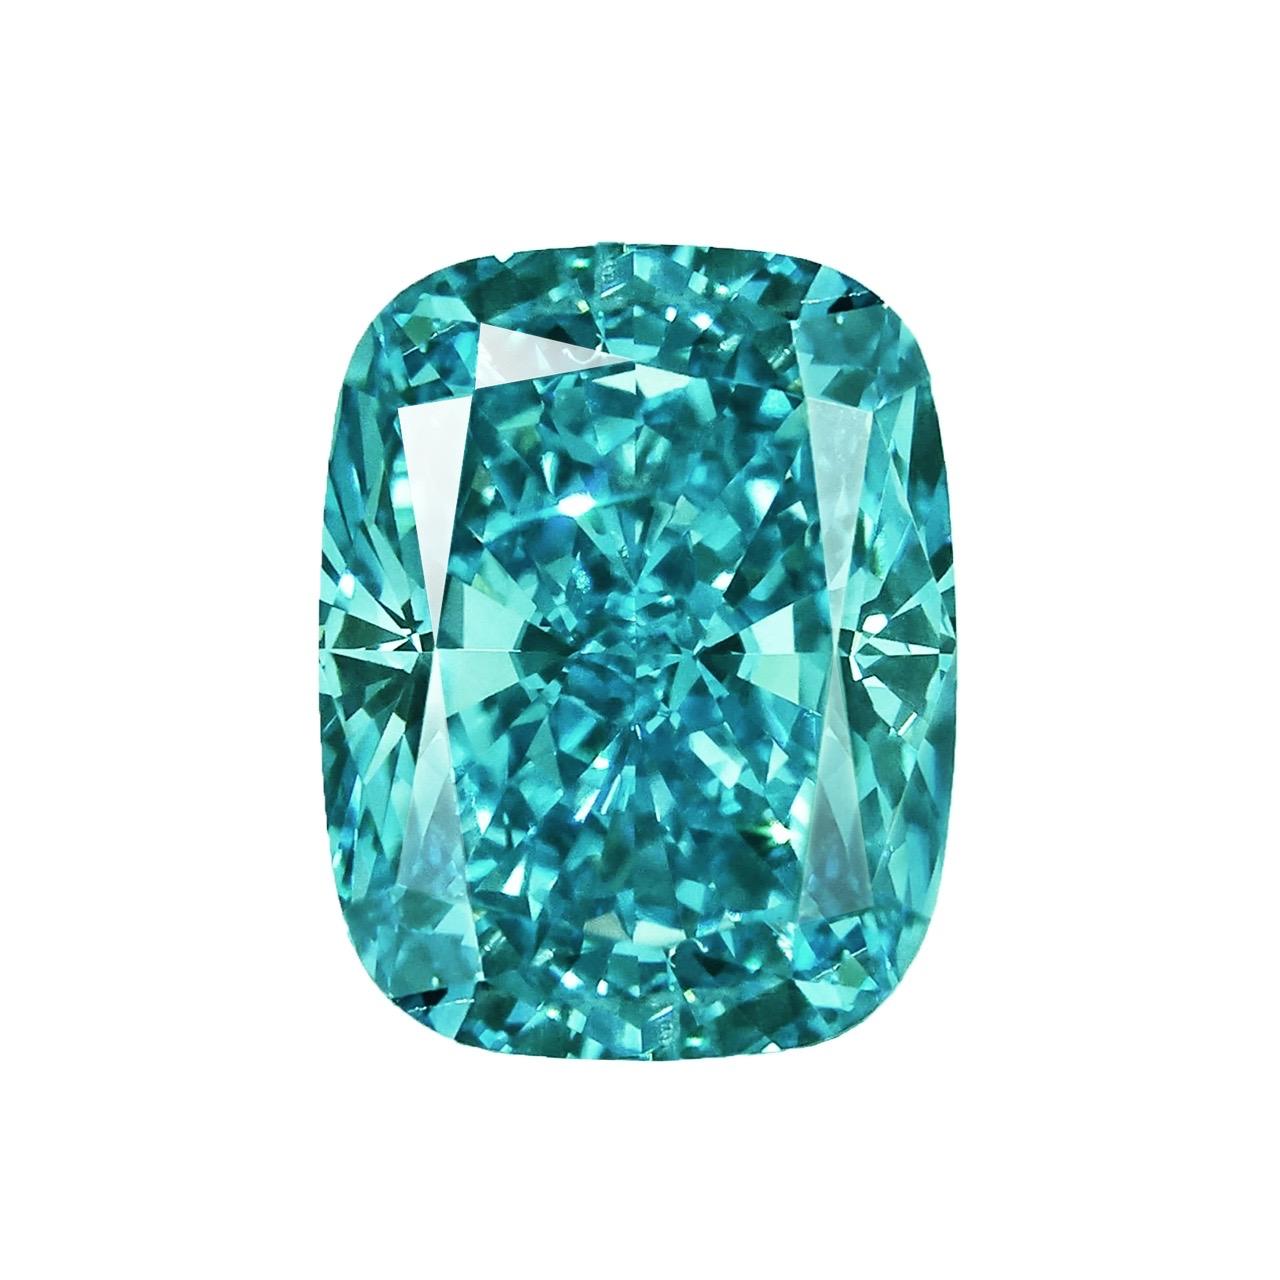 De la part du célèbre grossiste Emilio Jewelry Situé sur l'emblématique Cinquième Avenue de New York,
Pierre principale : 0,75 carat vert-bleu vif fantaisie 
Nous pouvons réaliser sur mesure la bague de vos rêves pour ce spectaculaire diamant